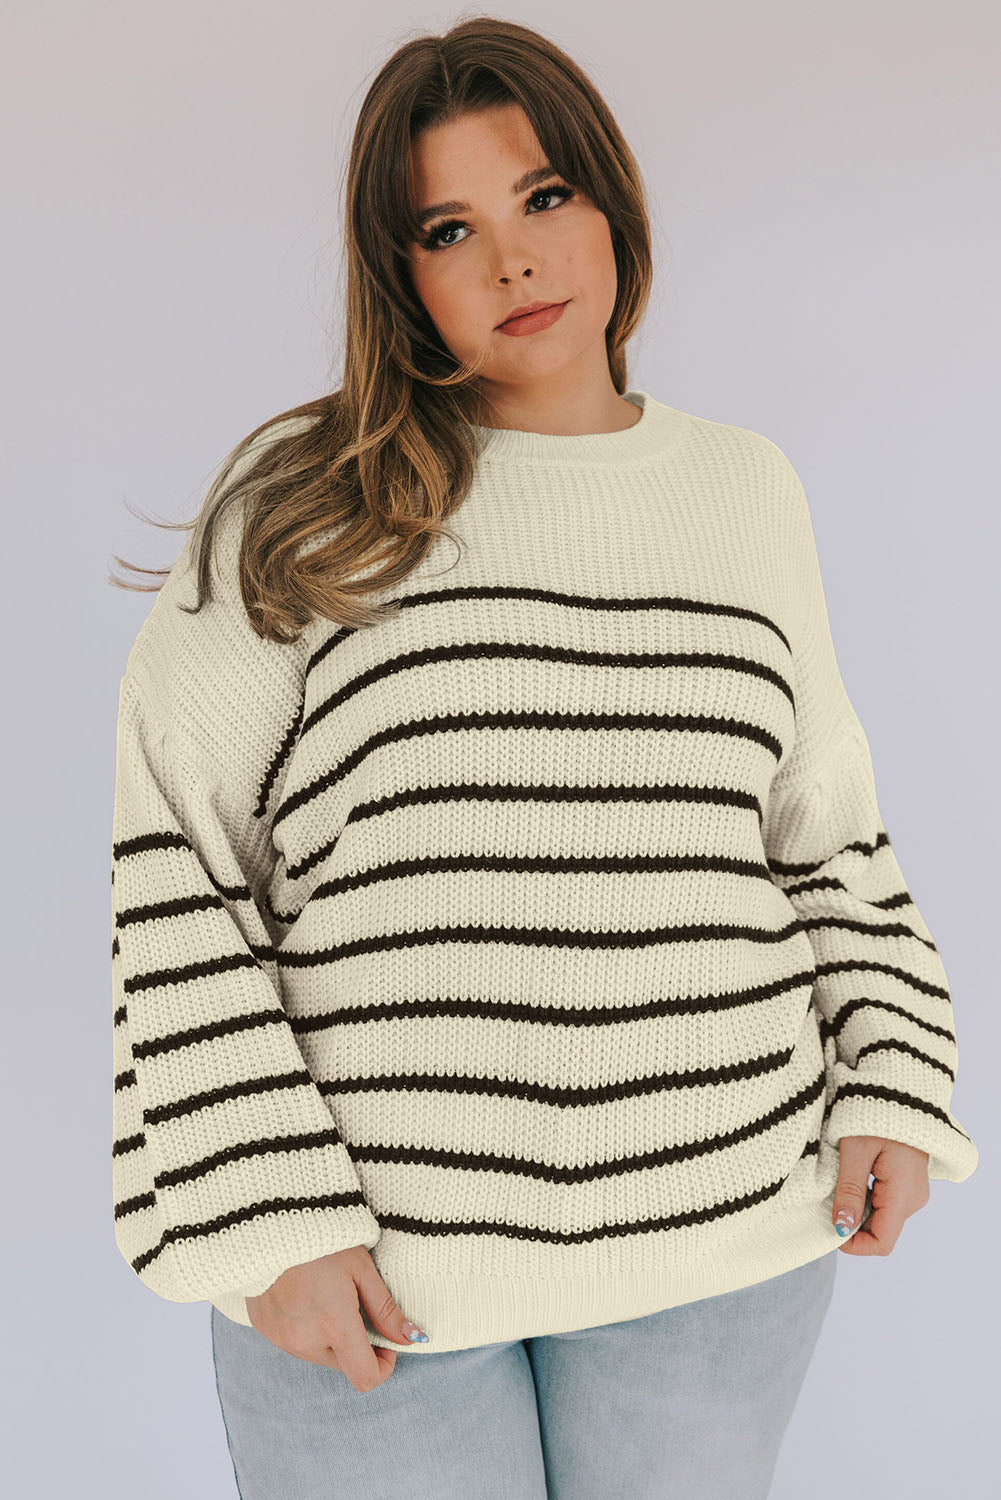 Kaki pulover s puf rukavima na spuštena ramena velike veličine